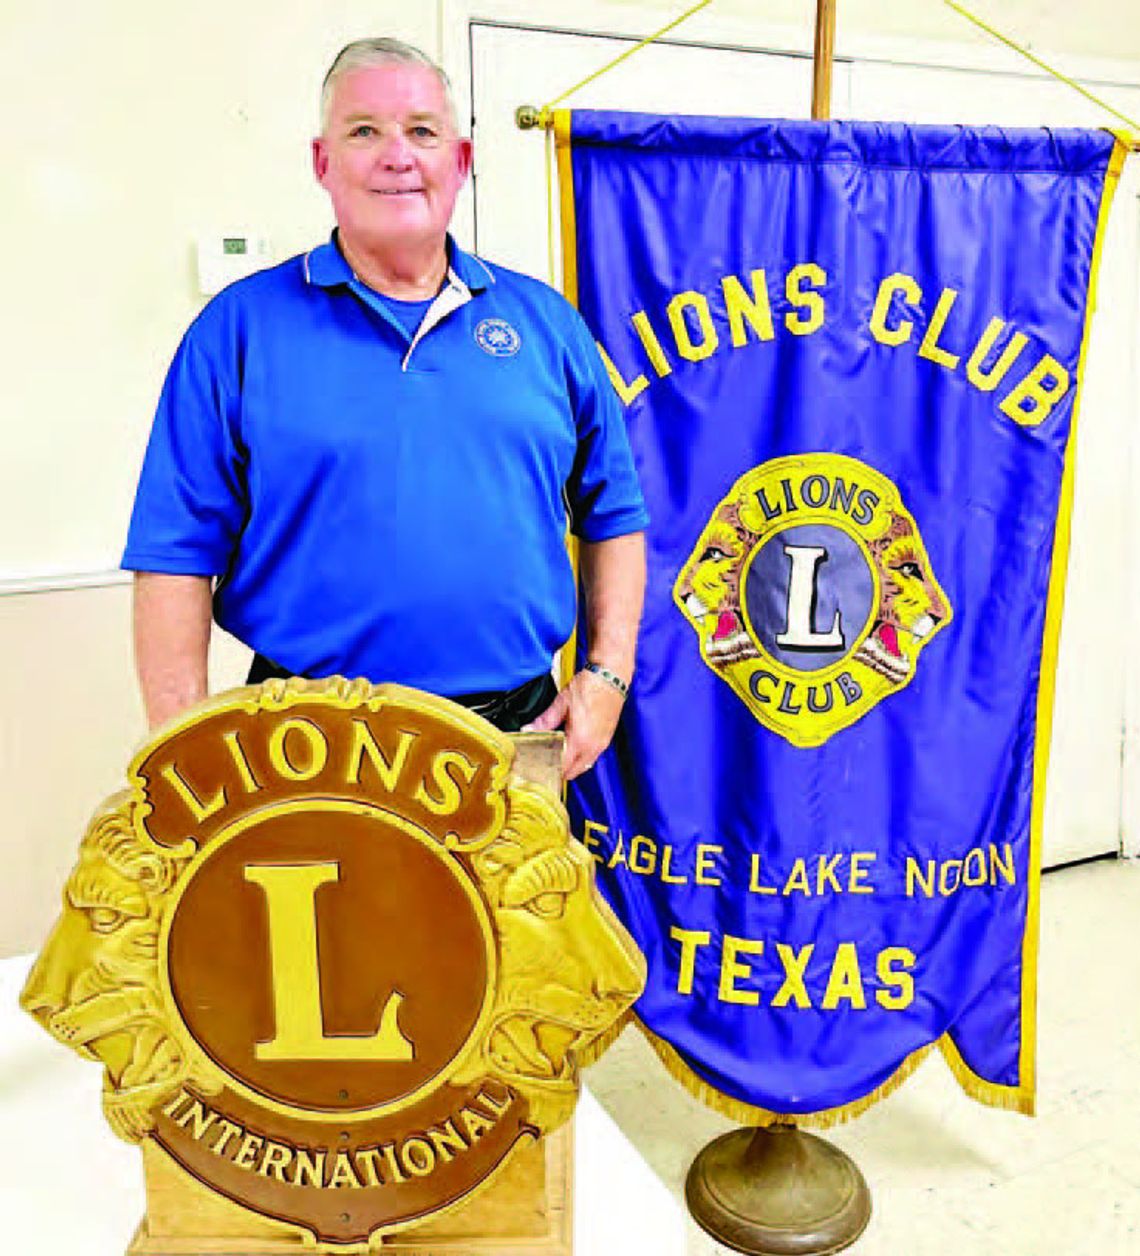 Dumont displays school spirit in talk with EL Lions